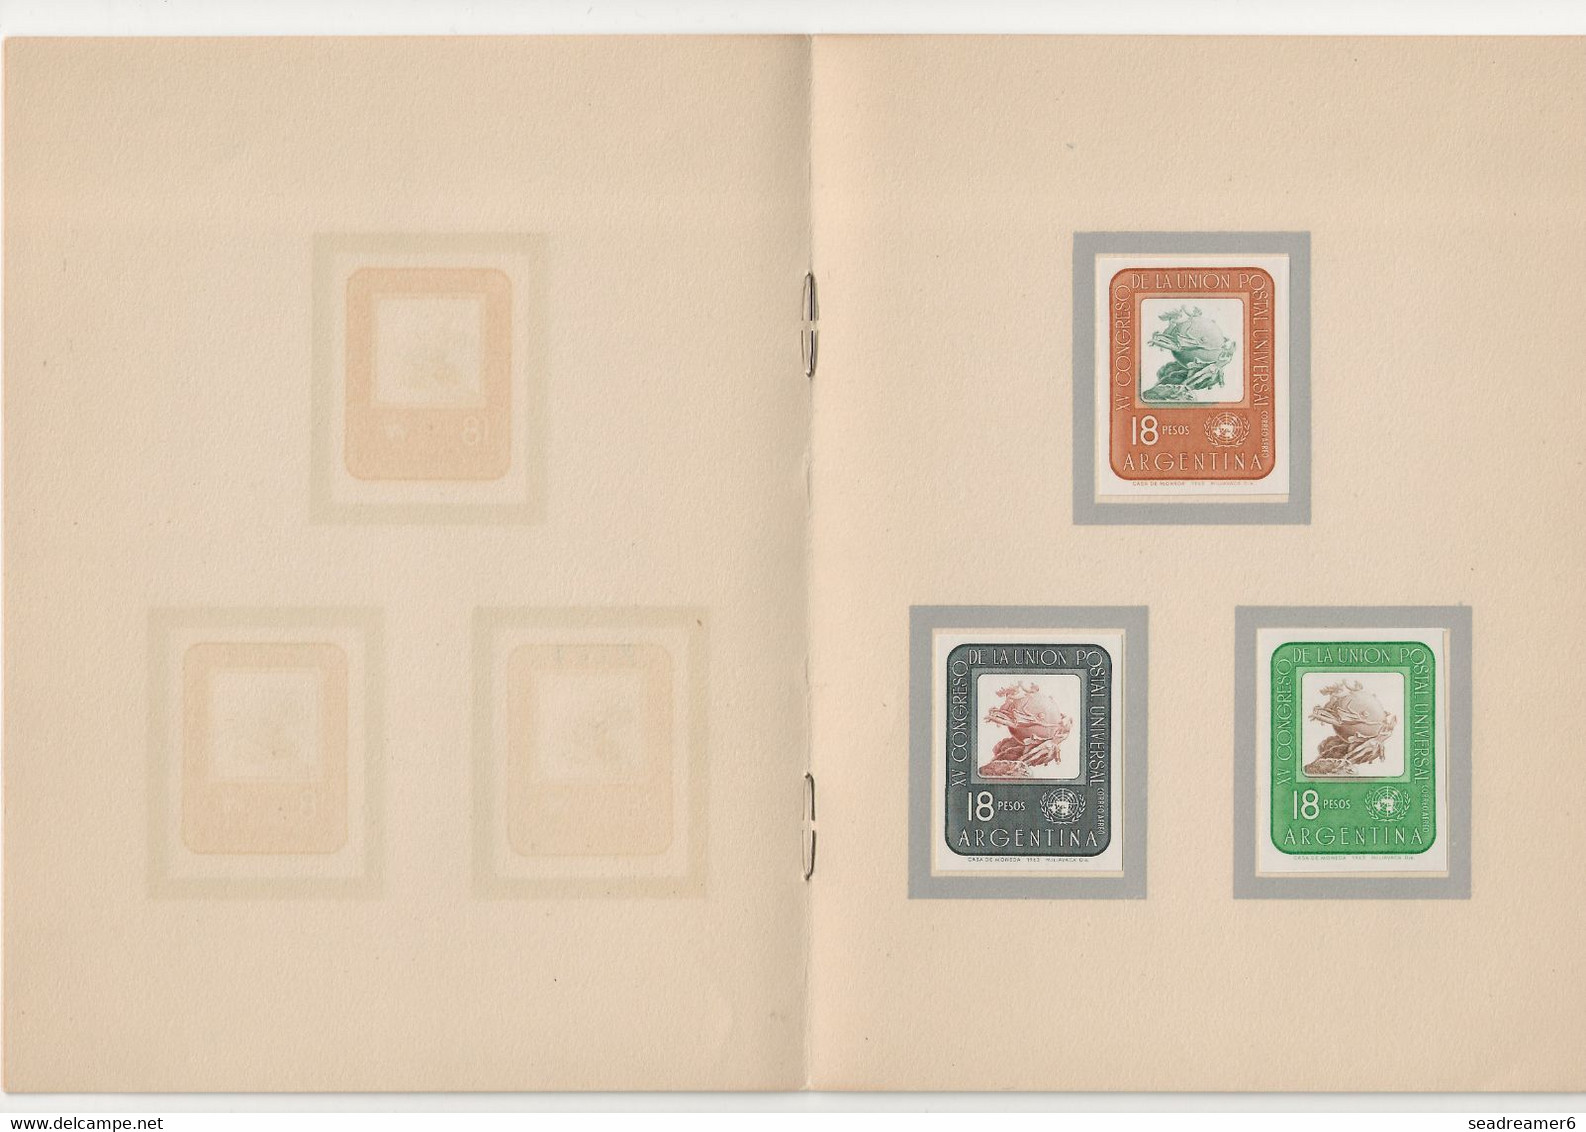 ARGENTINA XV Congreso De La Unión Postal Universal 6 Ensayos Sin Dentar De Diferentes Colores Del Sello Aéreo N°98 RR - Unused Stamps